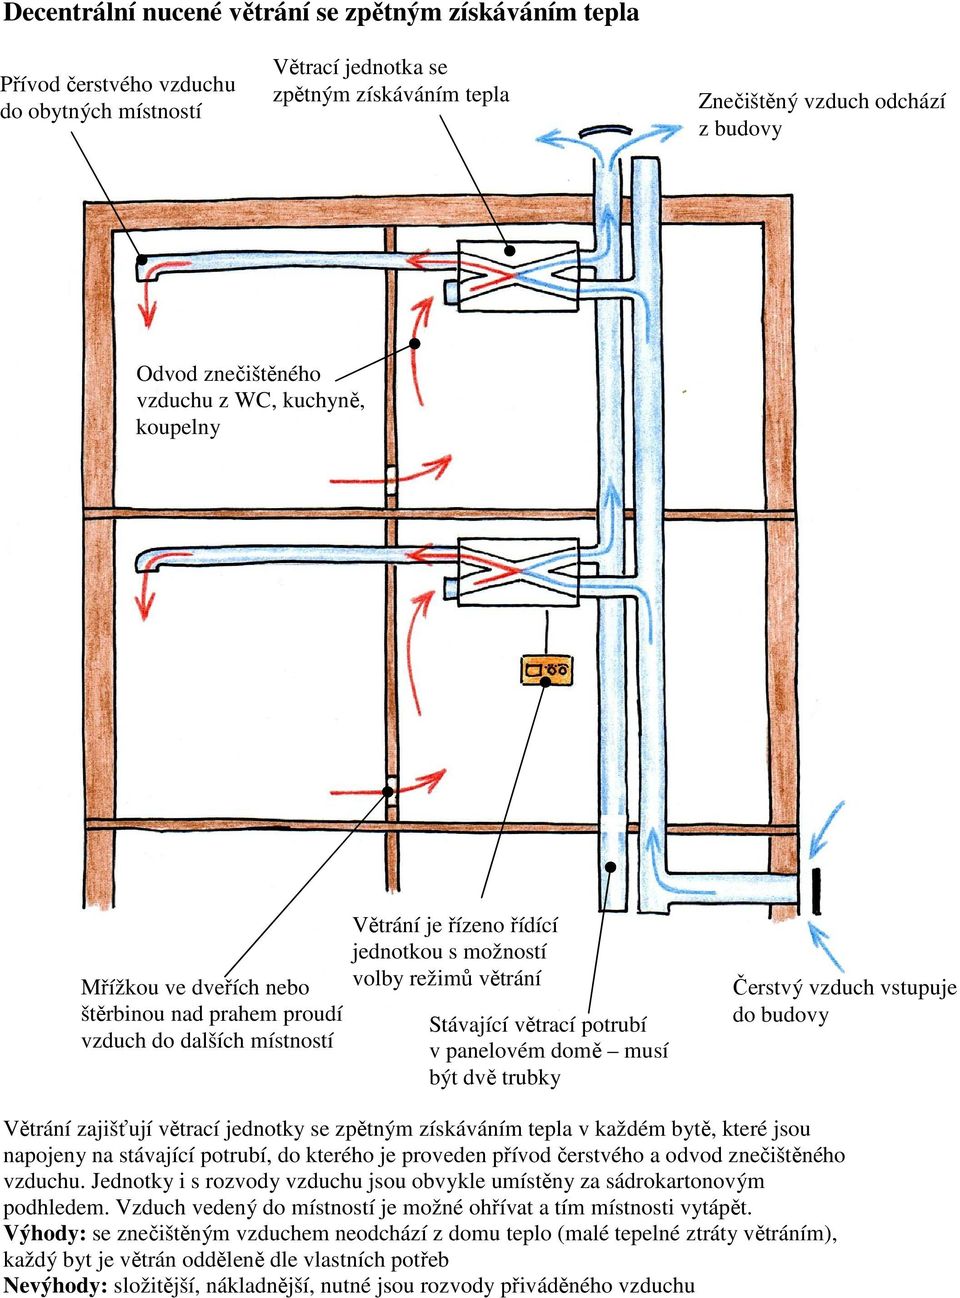 Stávající větrací potrubí v panelovém domě musí být dvě trubky Čerstvý vzduch vstupuje do budovy Větrání zajišťují větrací jednotky se zpětným získáváním tepla v každém bytě, které jsou napojeny na